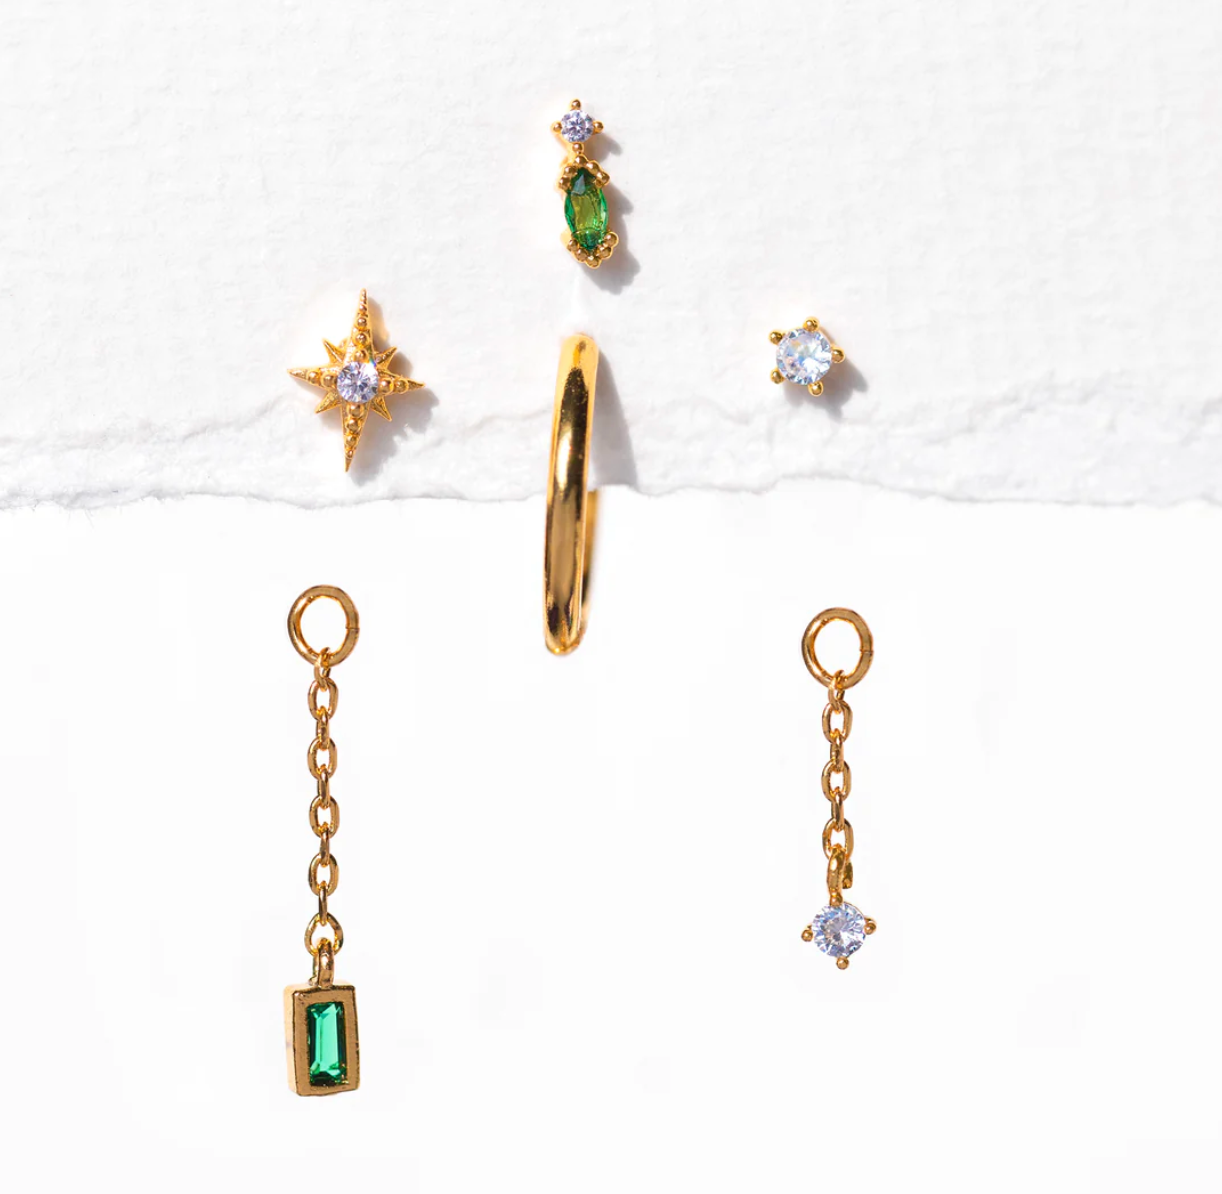 Emerald Dreamscape earrings by Girls Crew